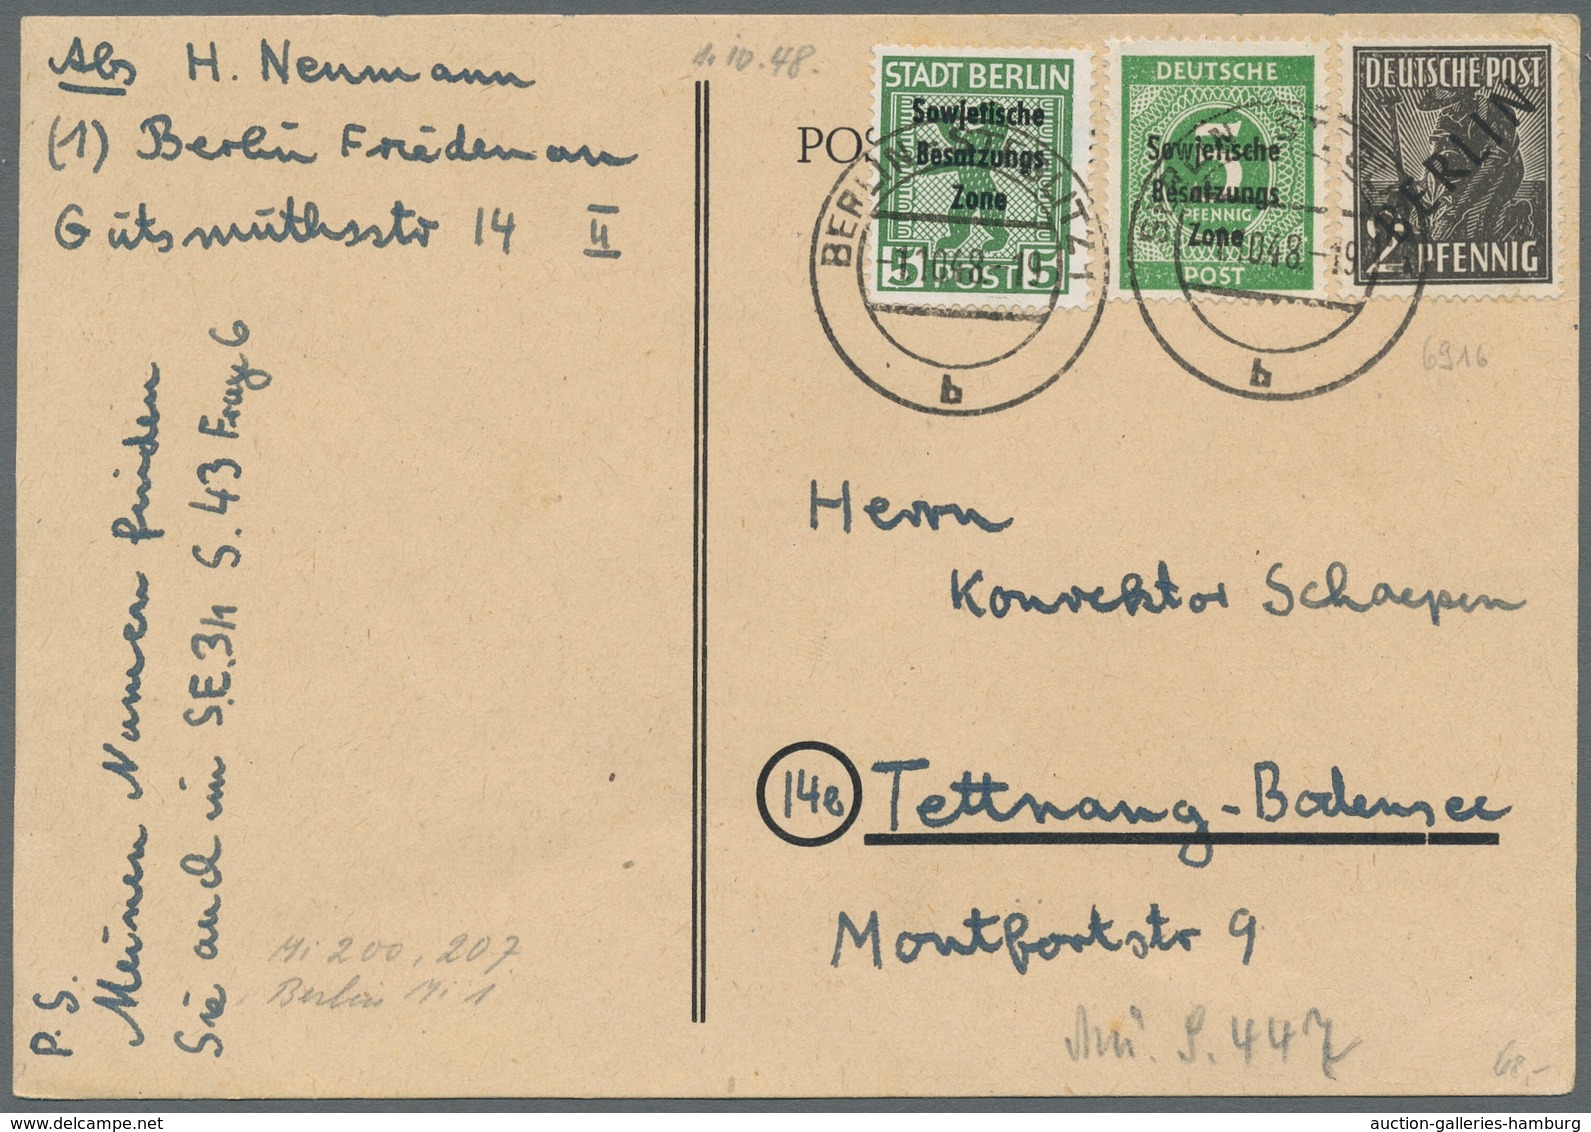 Berlin: 1948, "2 bis 8 und 24 Pfg. Schwarzaufdruck", als Länder-MiF mit diversen SBZ-Werten (u.a. Mi